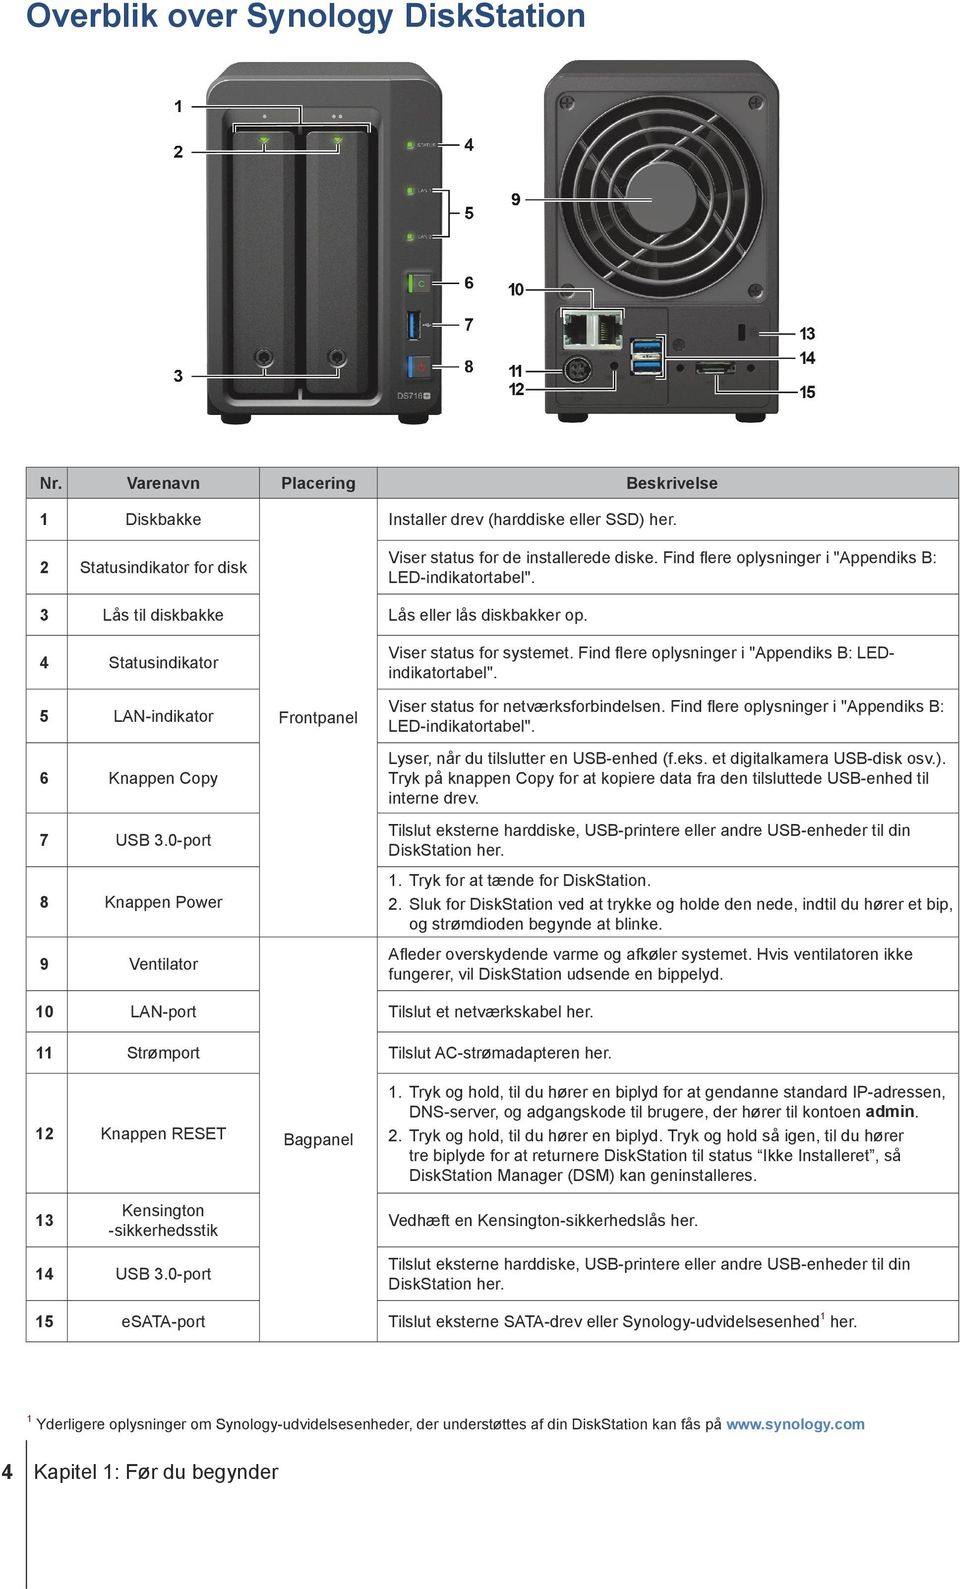 0-port 8 Knappen Power 9 Ventilator Frontpanel Viser status for systemet. Find flere oplysninger i "Appendiks B: LEDindikatortabel". Viser status for netværksforbindelsen.